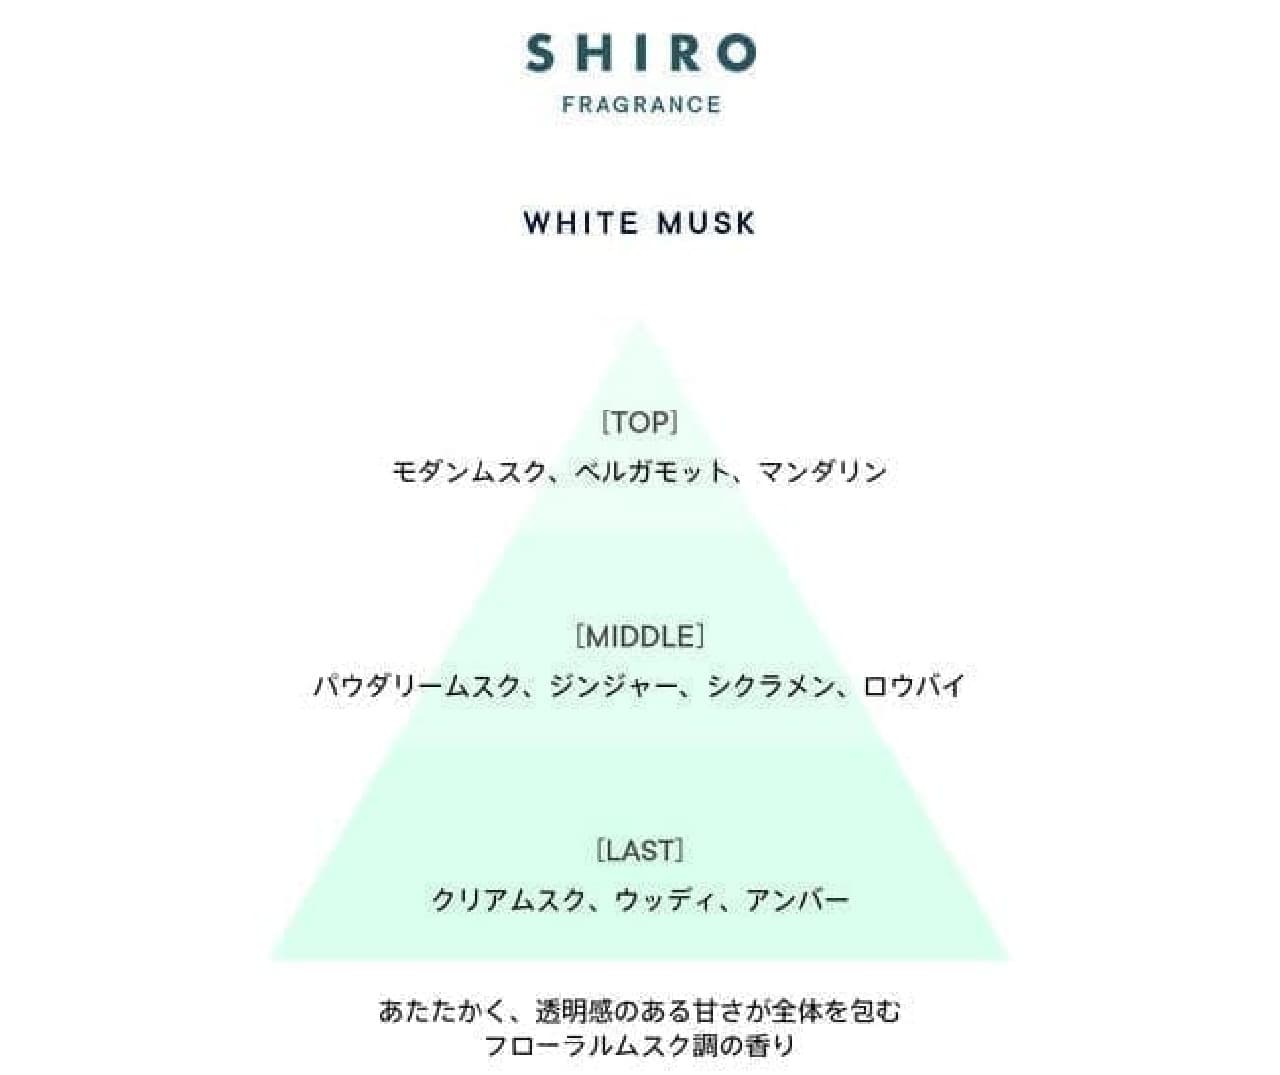 SHIRO 限定フレグランス「ホワイトムスク」透明感のある甘さ広がる